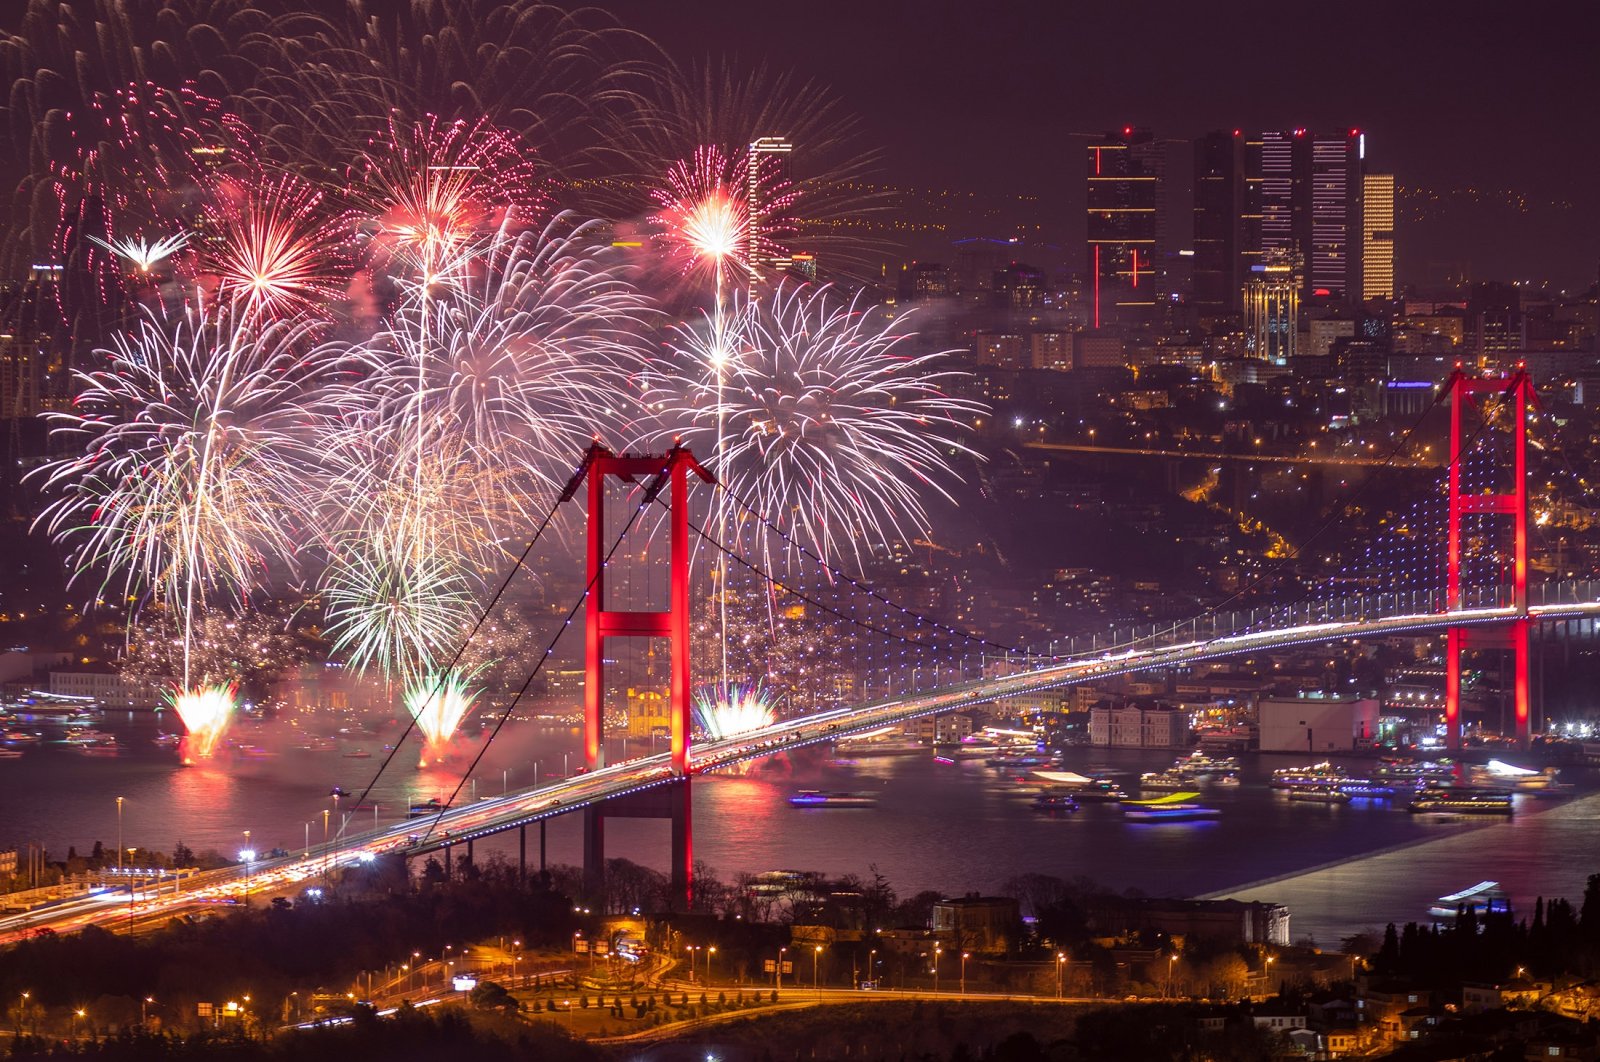 New Years 2020 celebrations around Istanbul. (Shutterstock Photo)